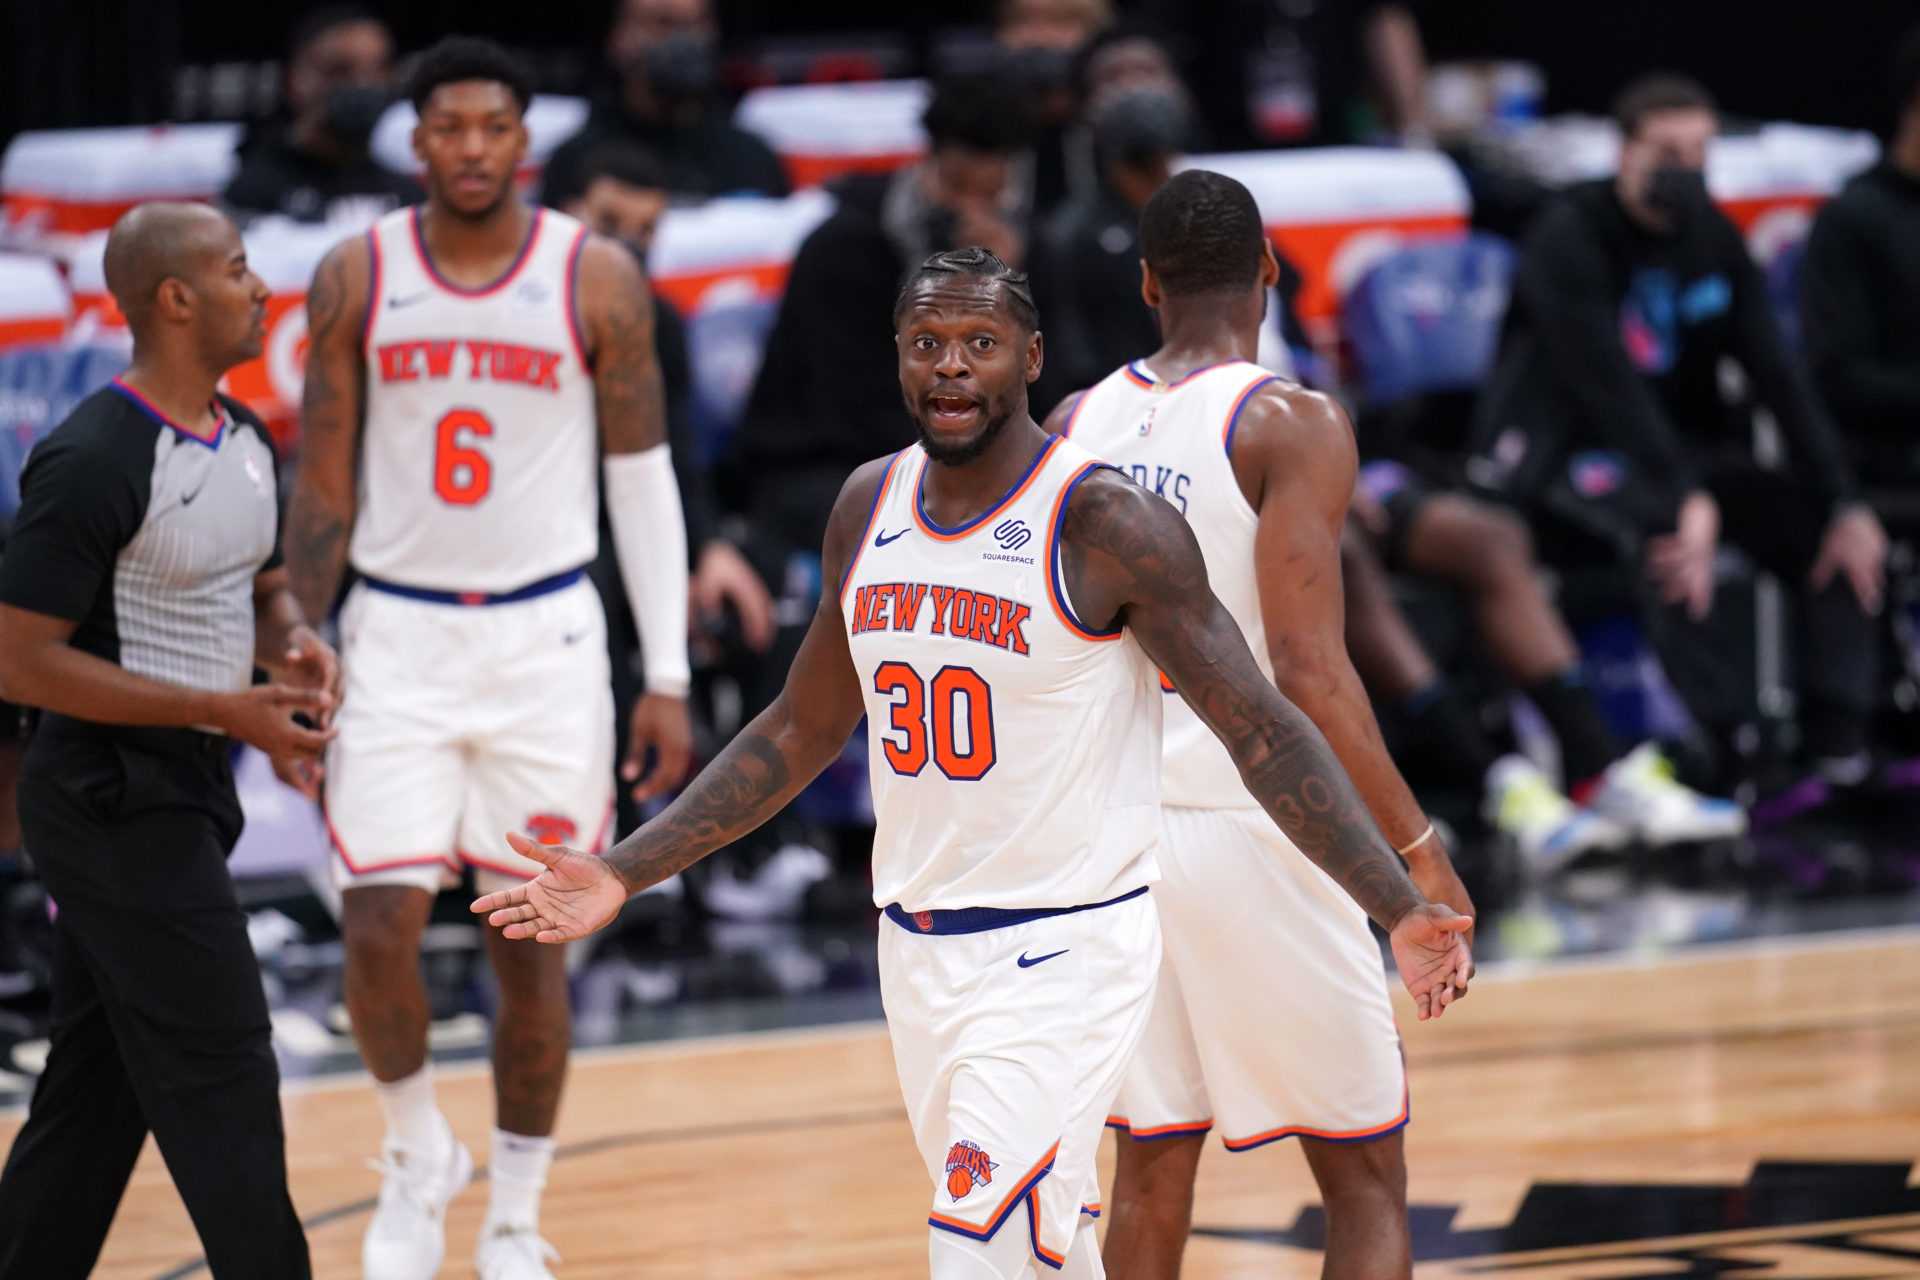 Un analyste de la NBA suggère un commerce sauvage en faveur des New York Knicks: voici les options possibles